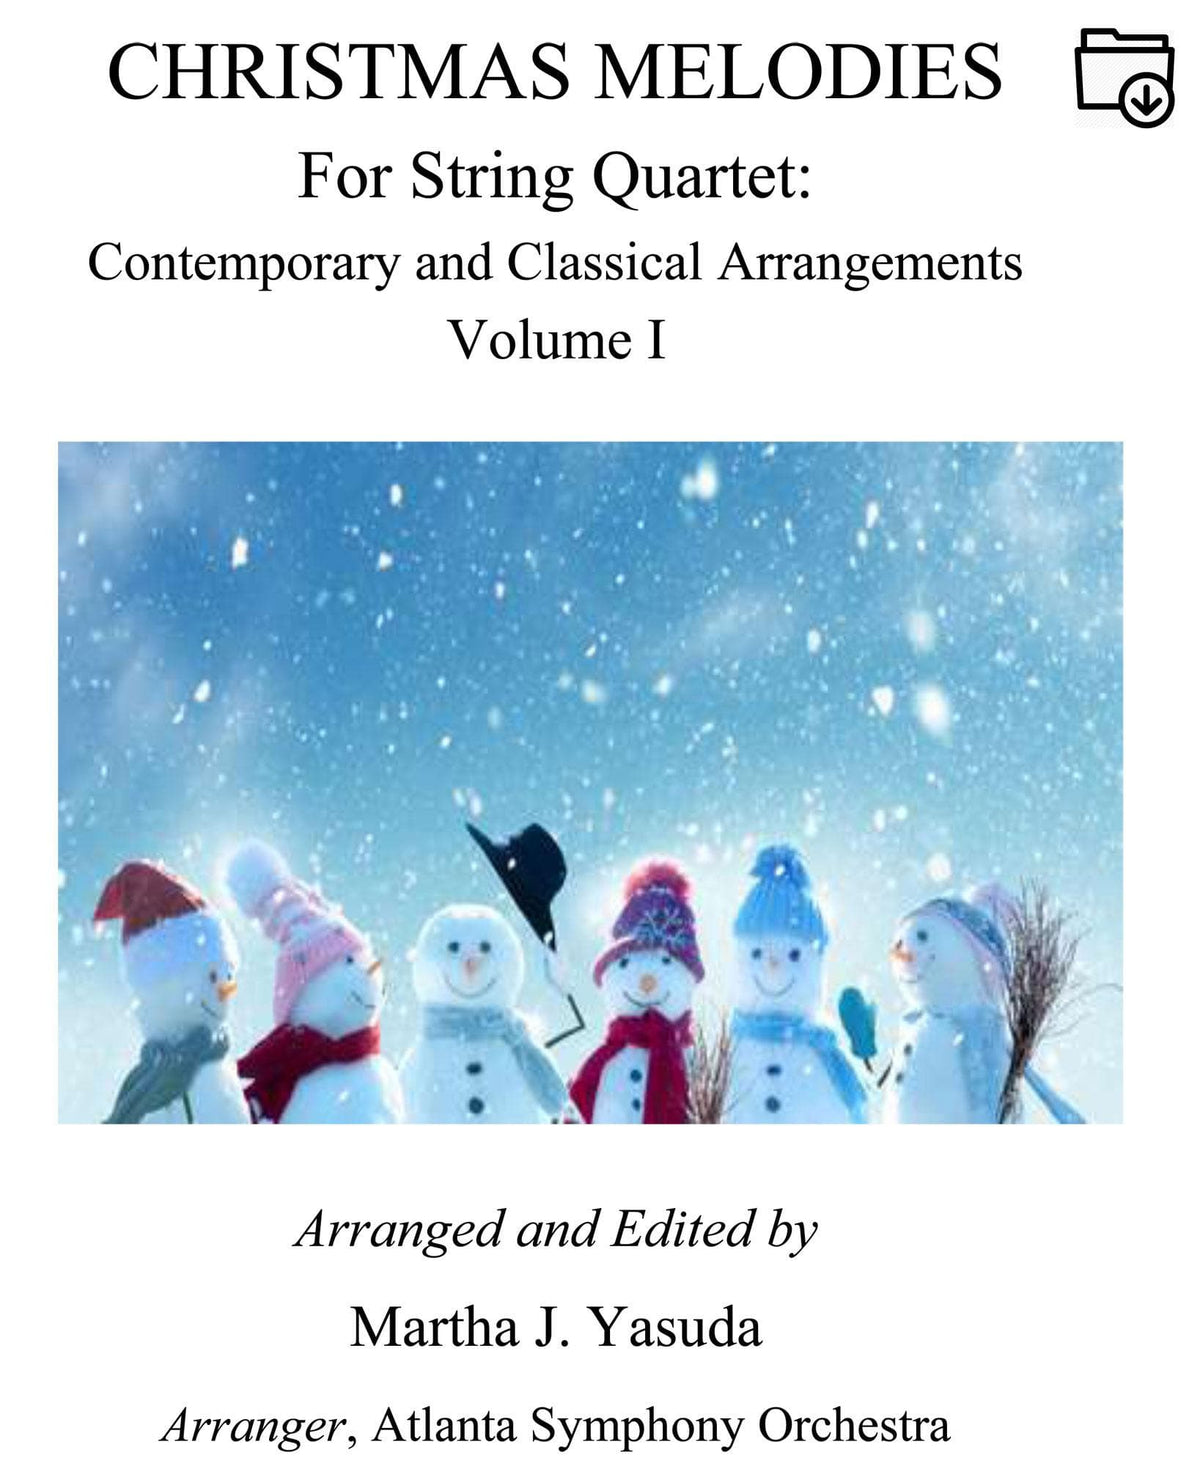 Yasuda - Christmas Melodies: Contemporary & Classical Arr. For String Quartet, Volume I - Dig. DL